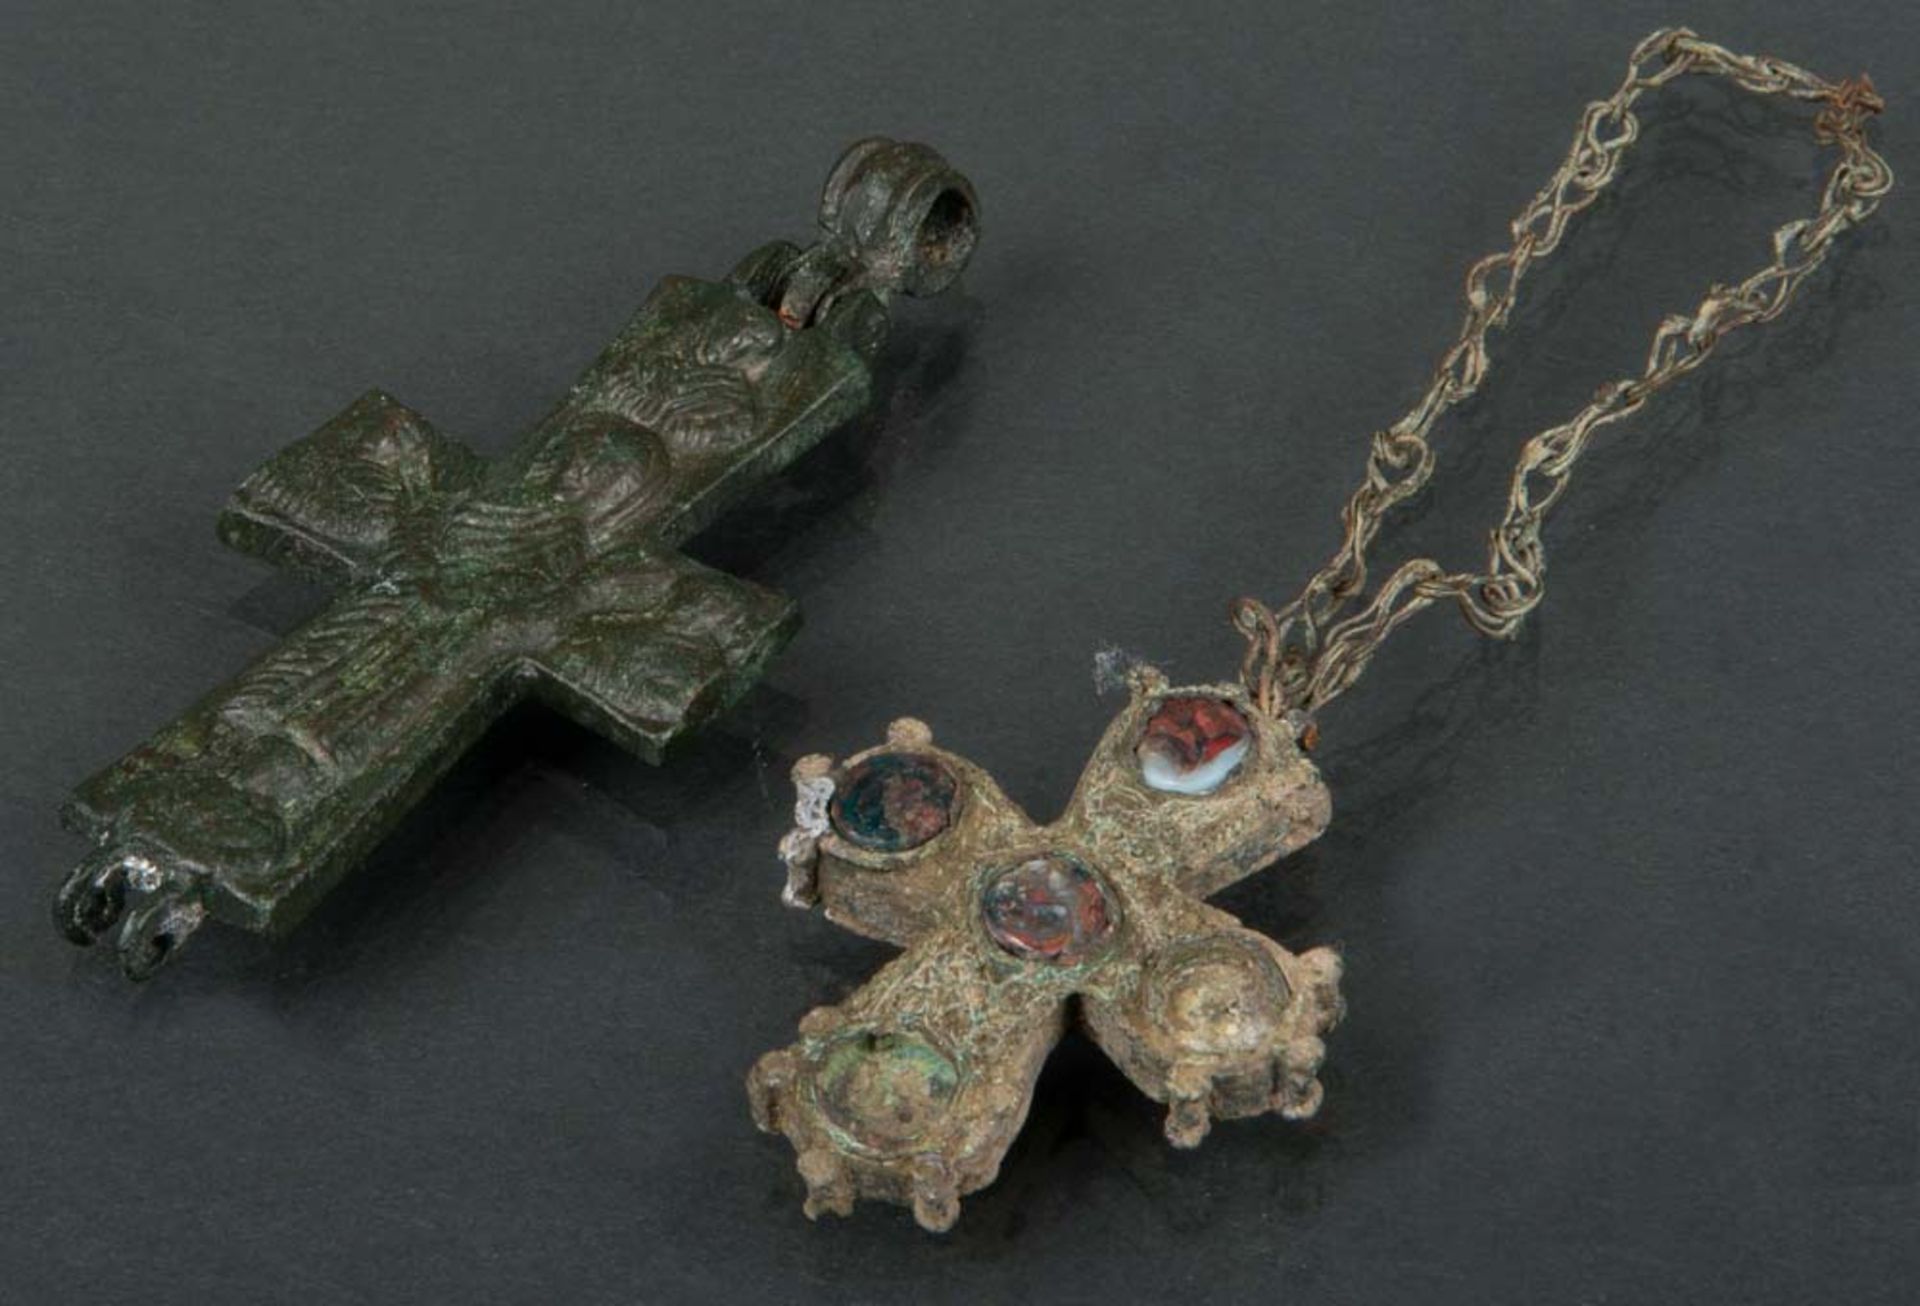 Zwei Kreuze. Lt. Rechnung Byzantinisch 6. bis 8. Jh. n. Chr. Bronze, teilw. reliefiert bzw. mit